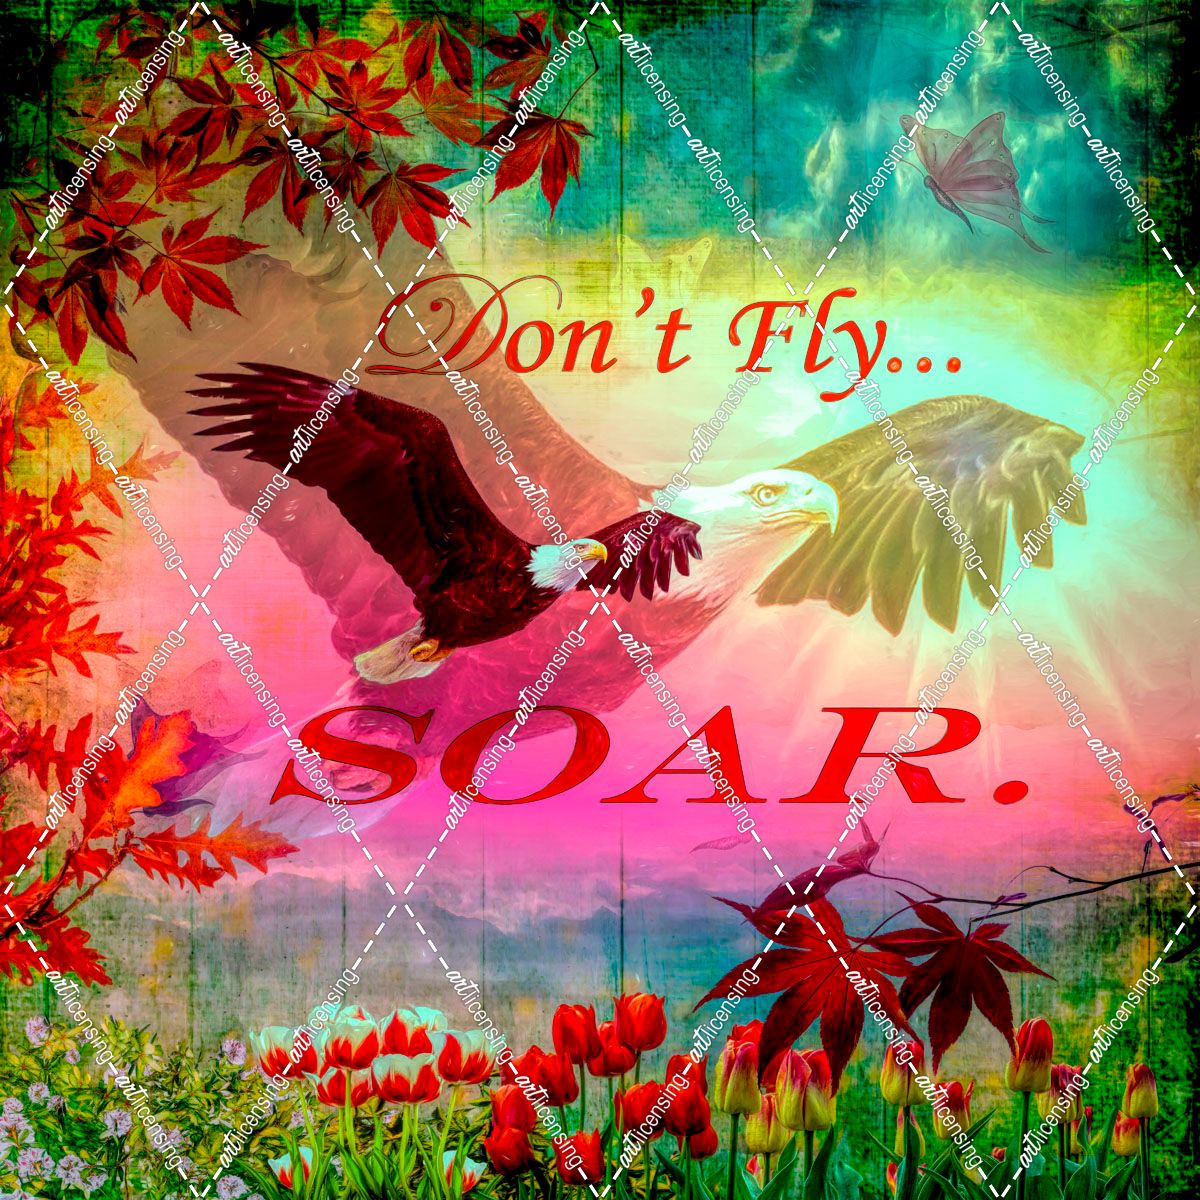 Don’t Fly, Soar